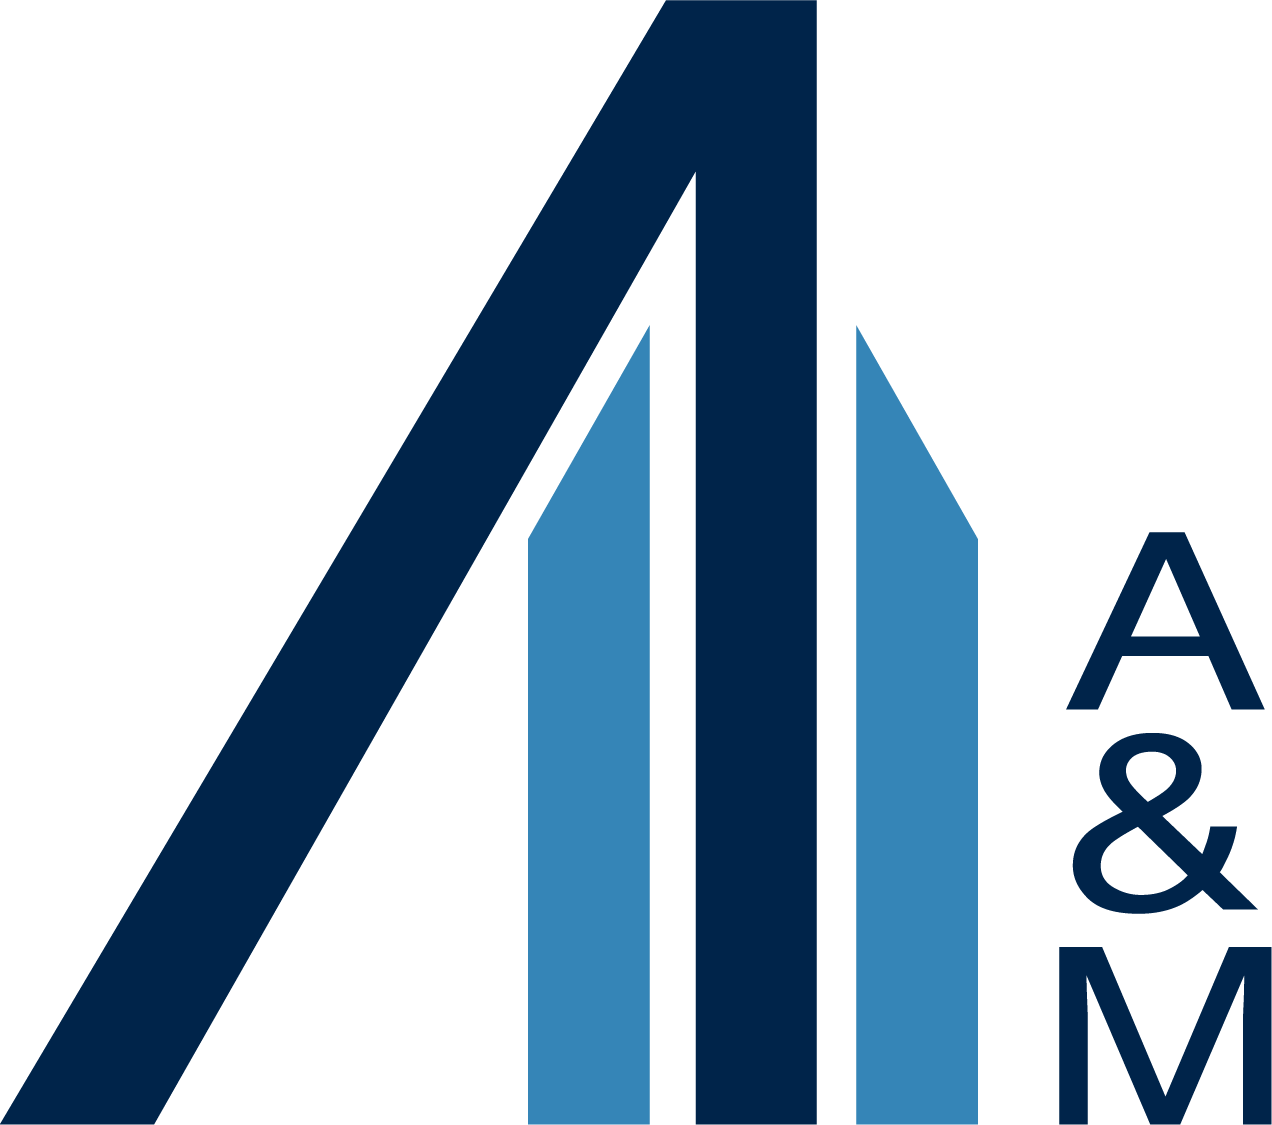 A&M Logo